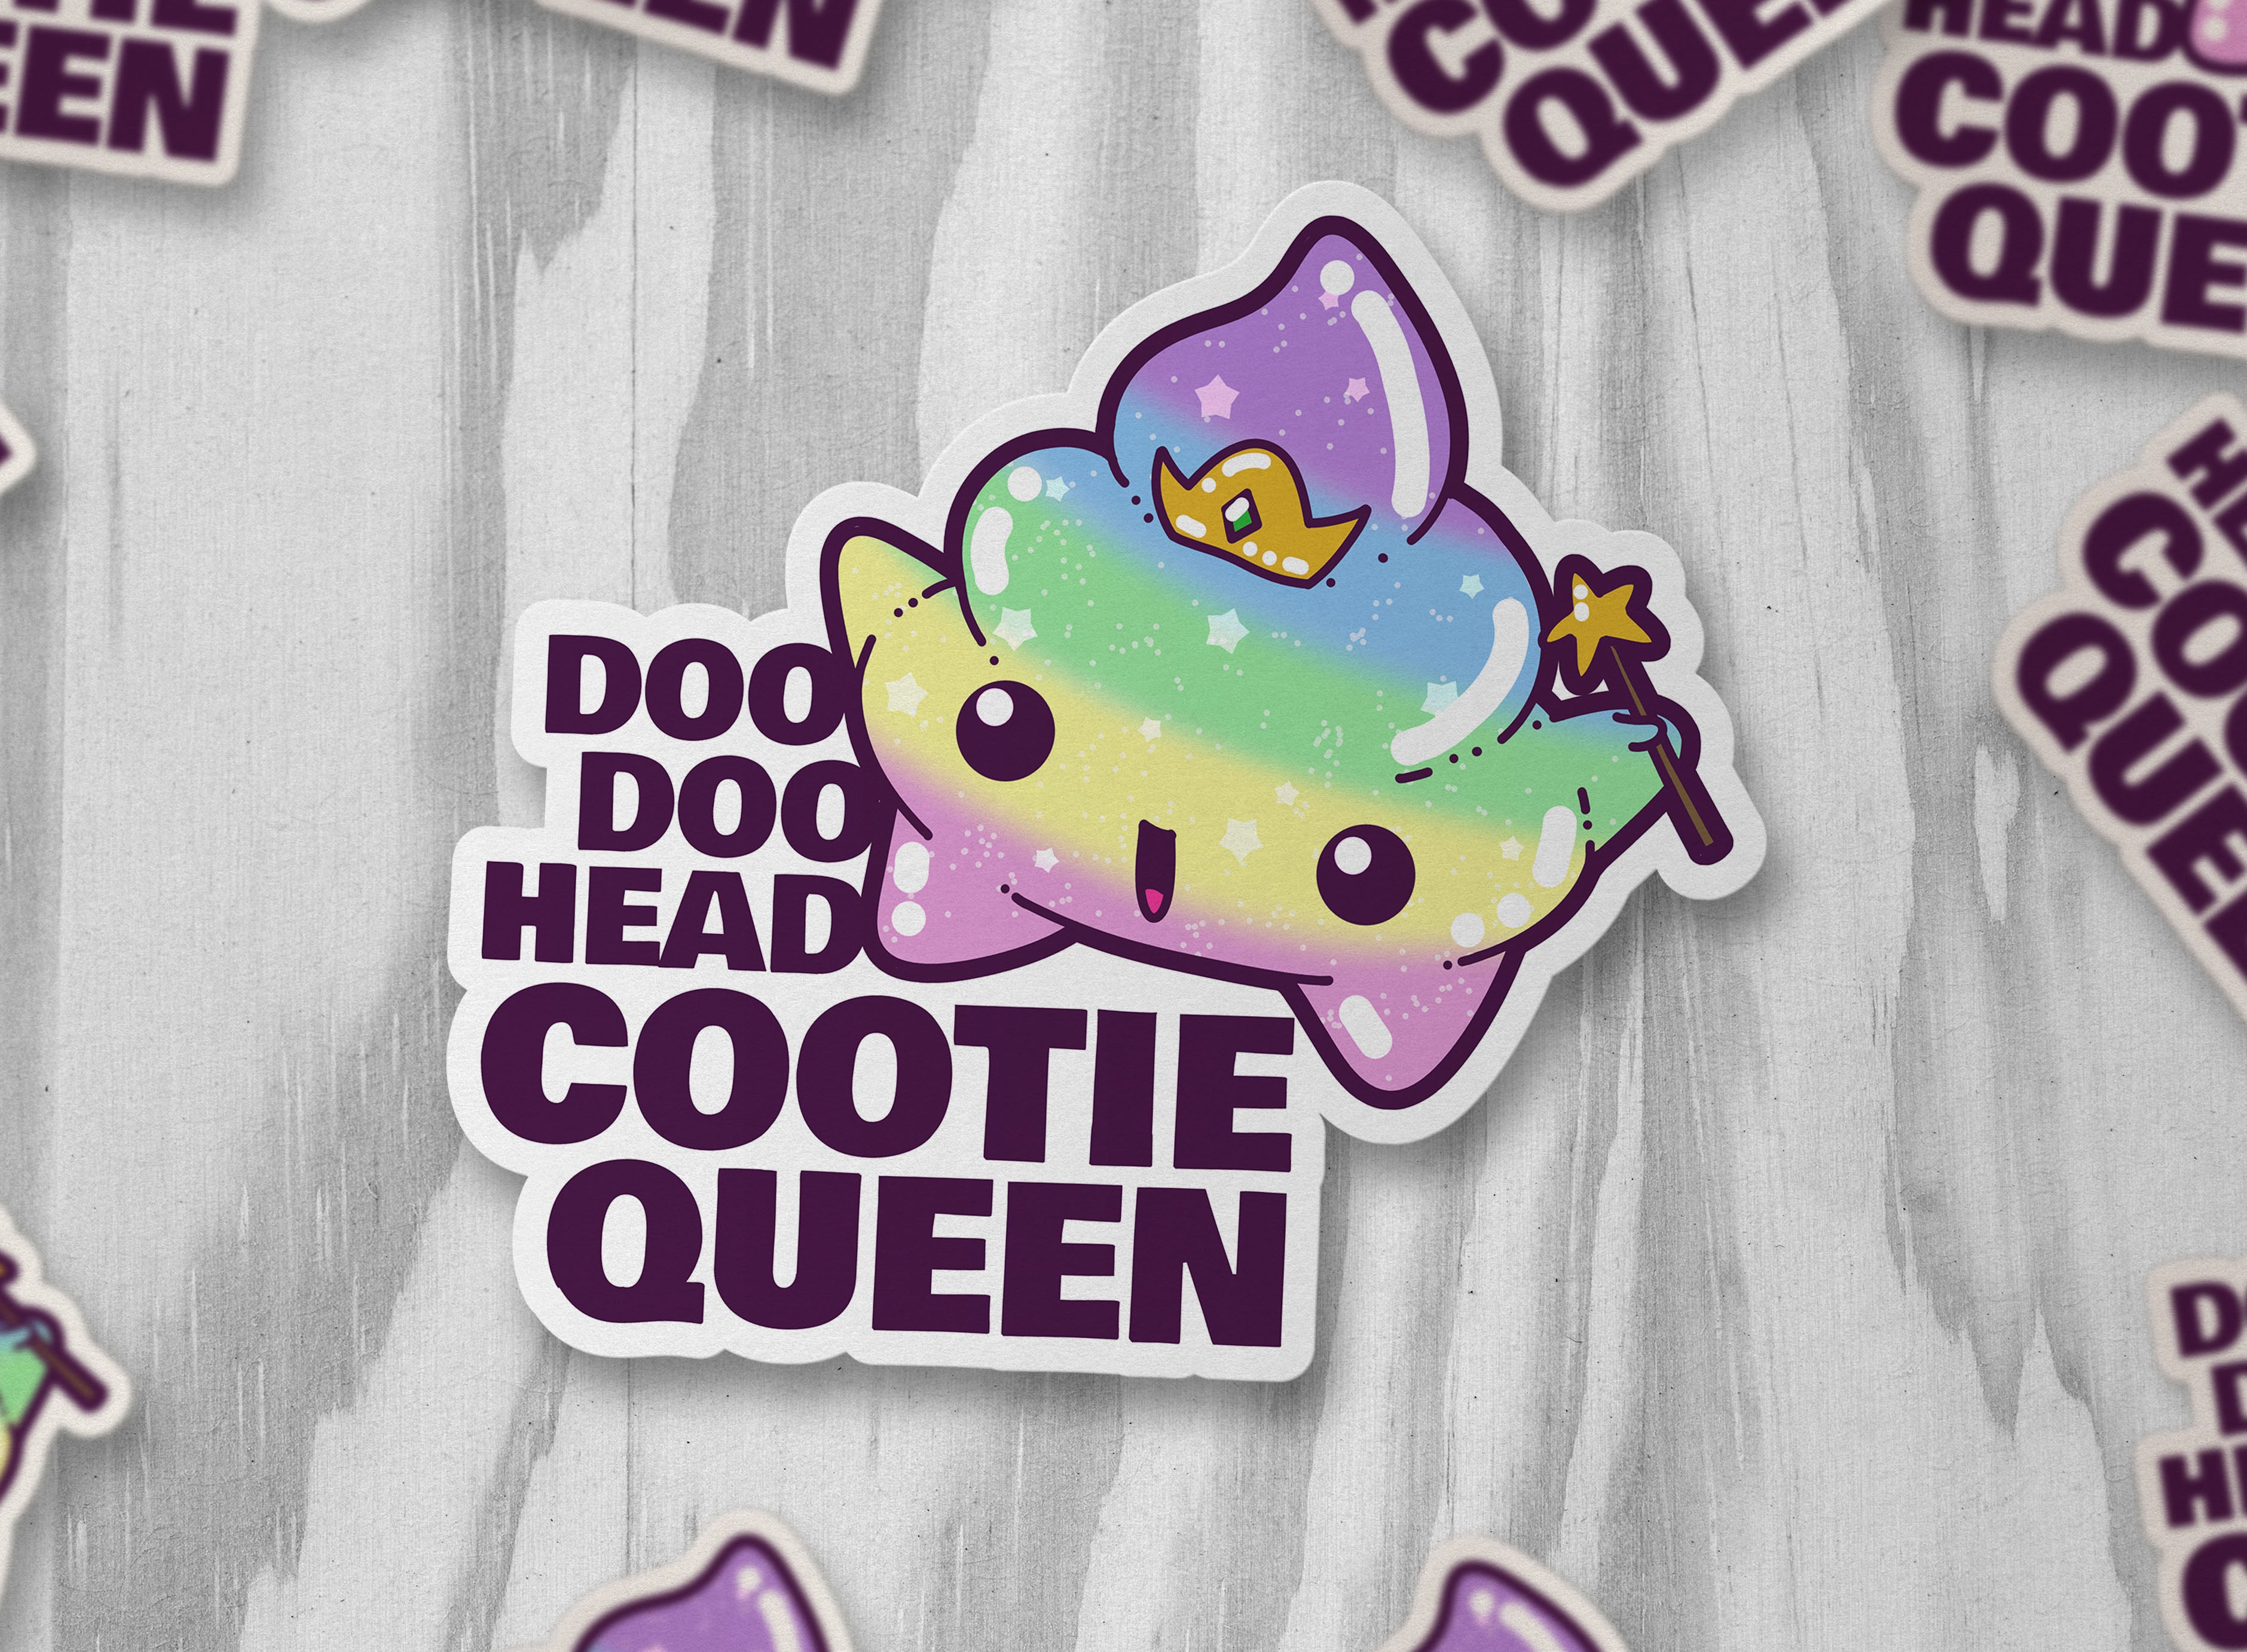 Doo Doo Head Cootie Queen - ChubbleGumLLC